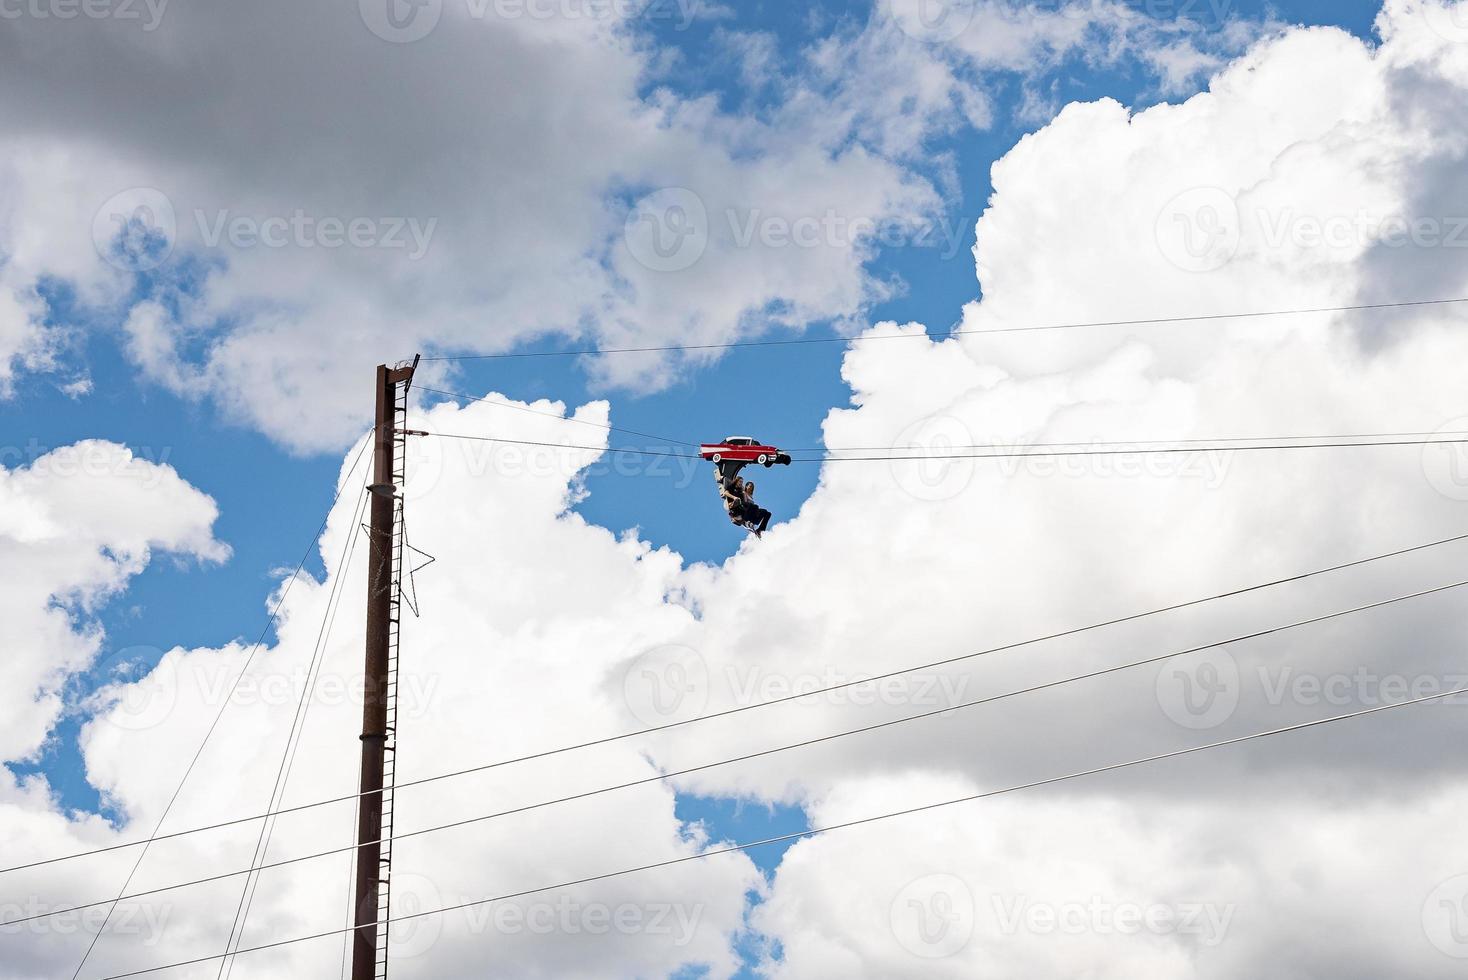 turister njuter unik rida hög upp med molnig himmel i bakgrund foto